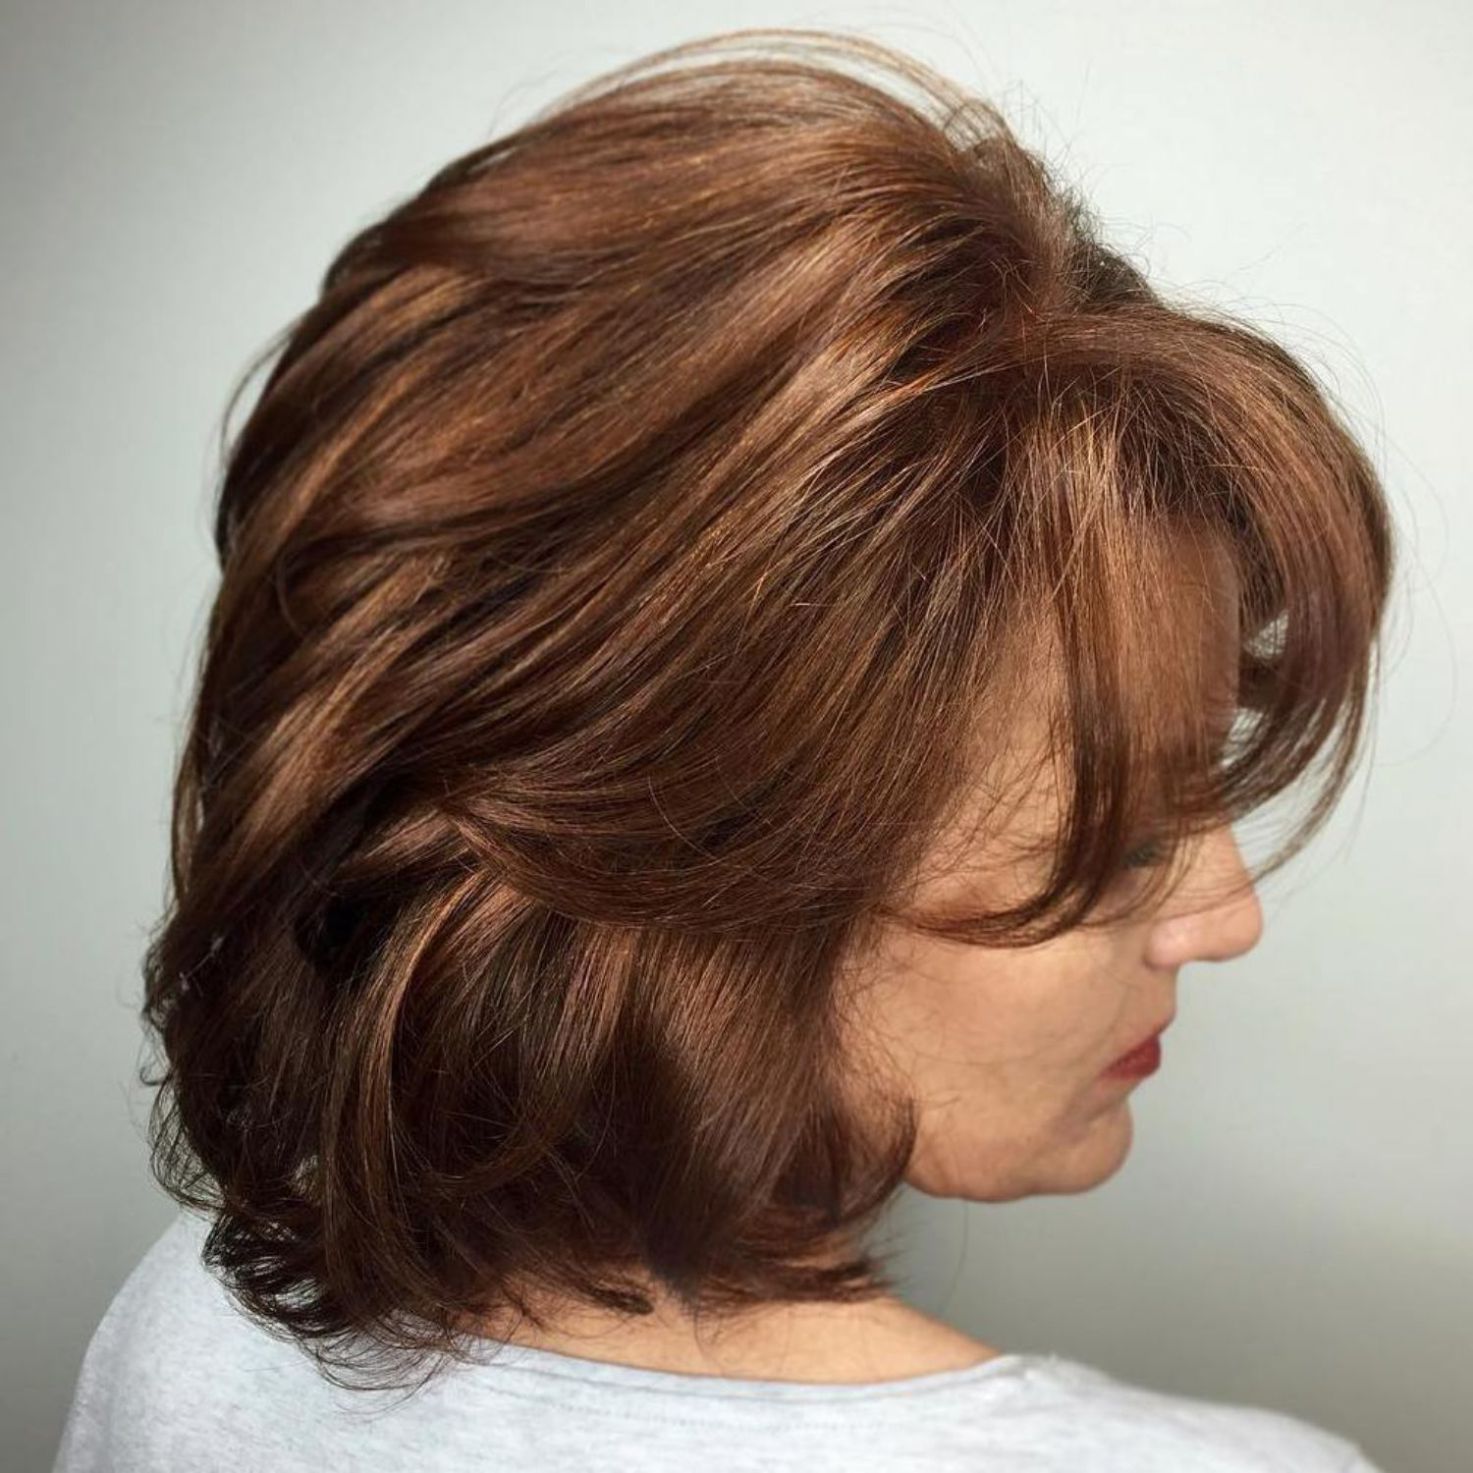 Причёски на средние волосы для женщин 40 лет